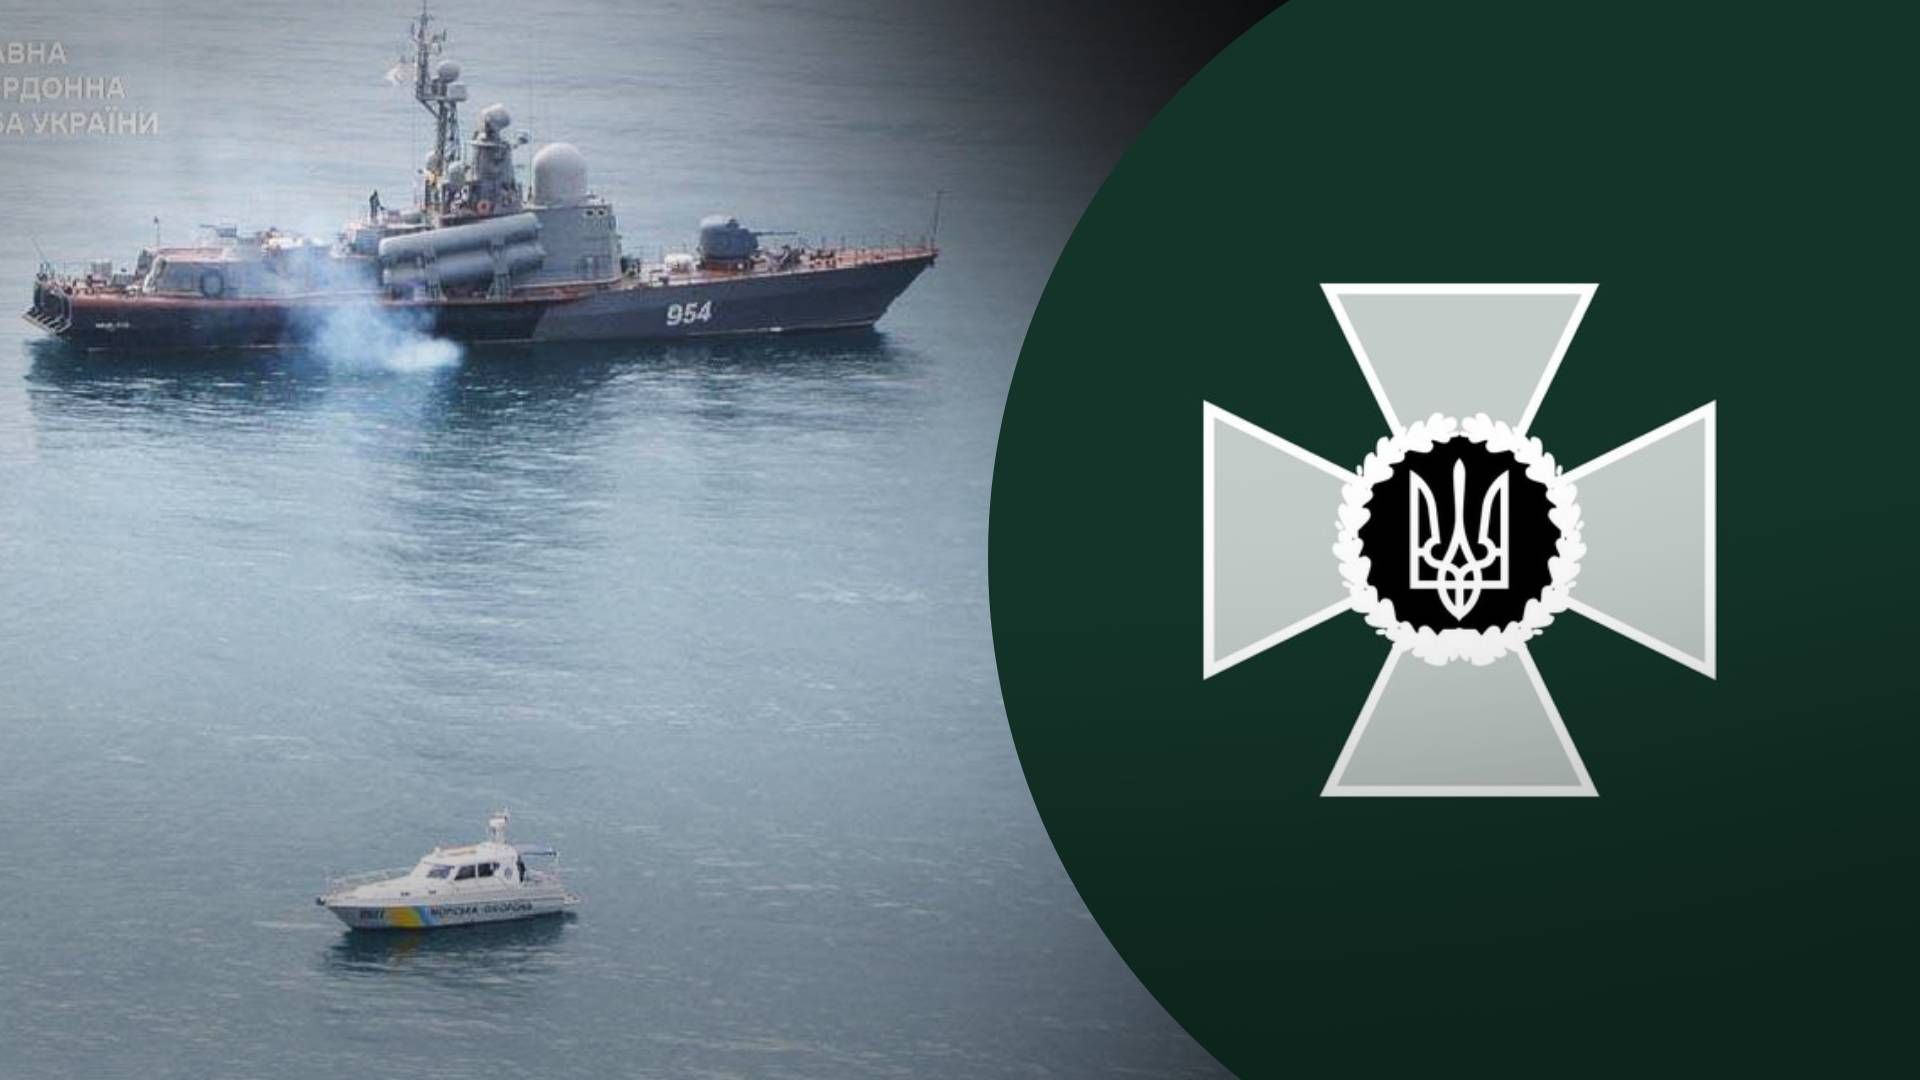 Прикордонники показали архівне фото катера "Івановєц": у 2014 погрожував морській охороні - 24 Канал